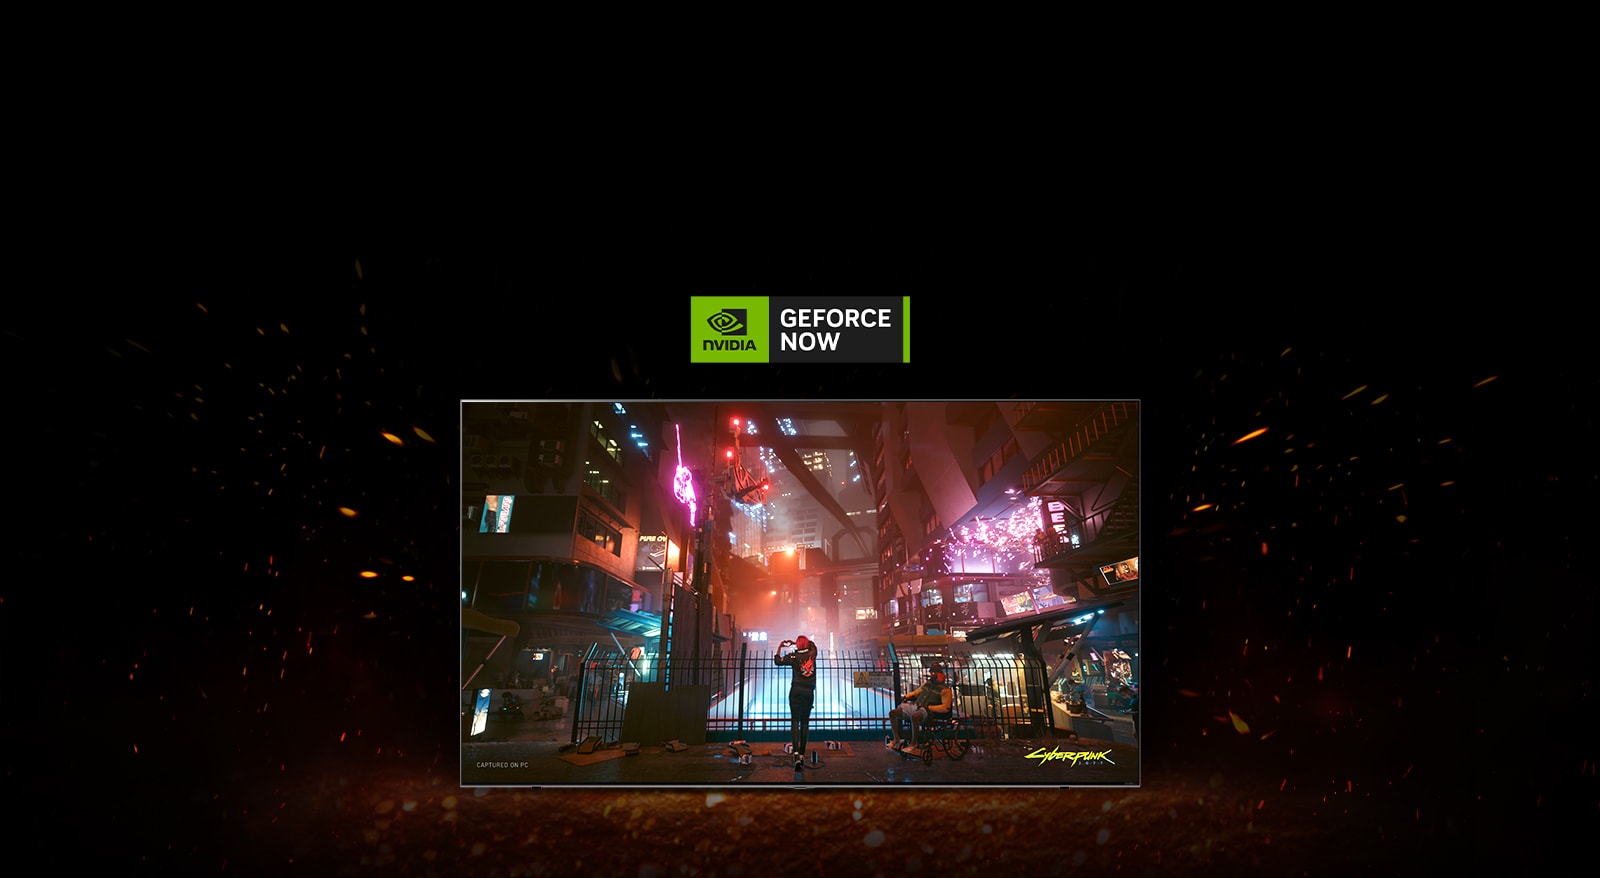 Ap televizoru uzliesmo liesmas, un iekšpusē var redzēt Cyberpunk spēles ekrānu. Televizora augšpusē ir redzams Geforce now logotips.